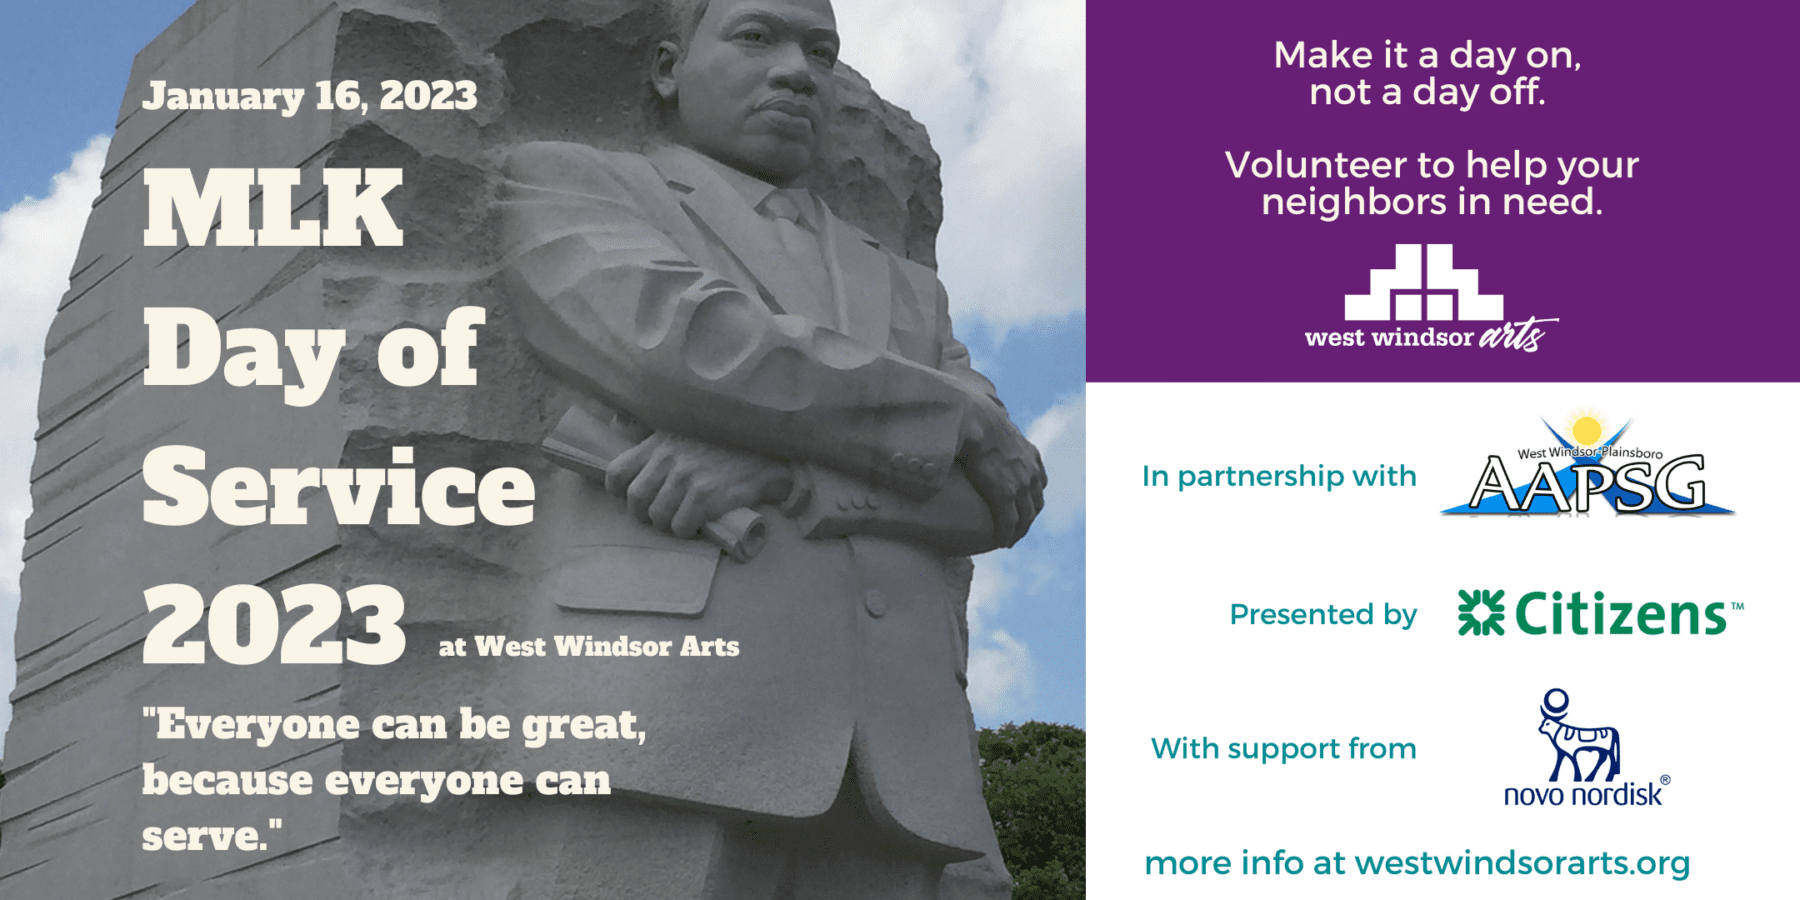 MLK Day of Service 2023 community service